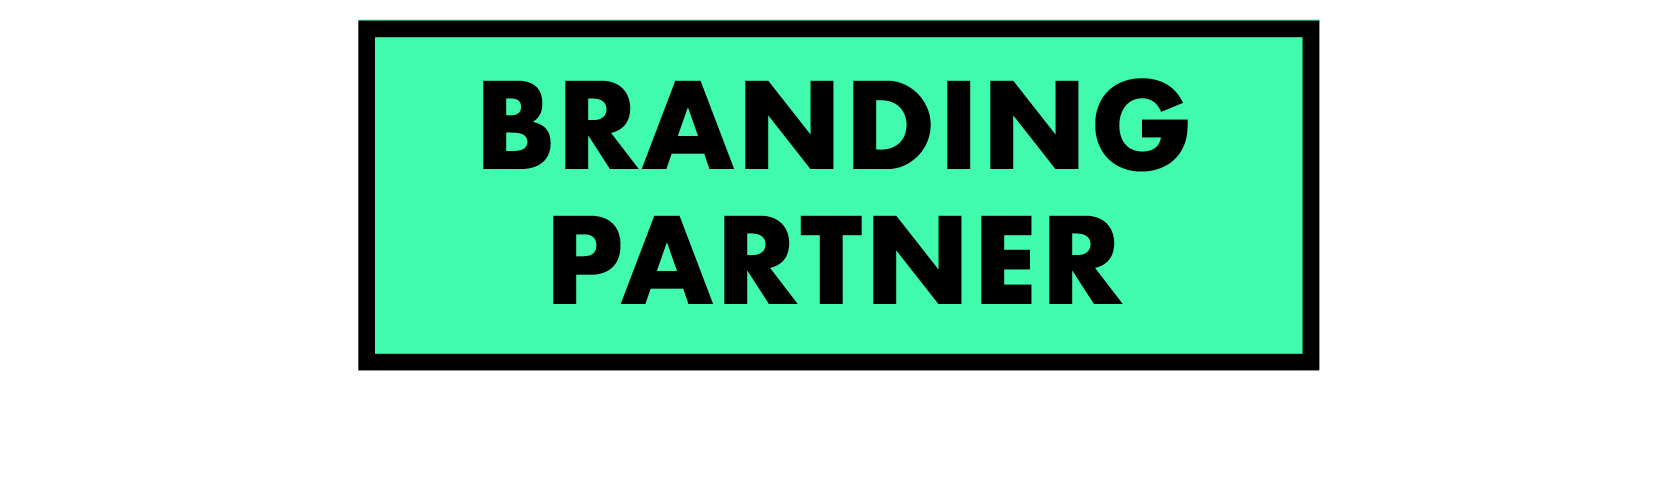 branding-partner-green-title